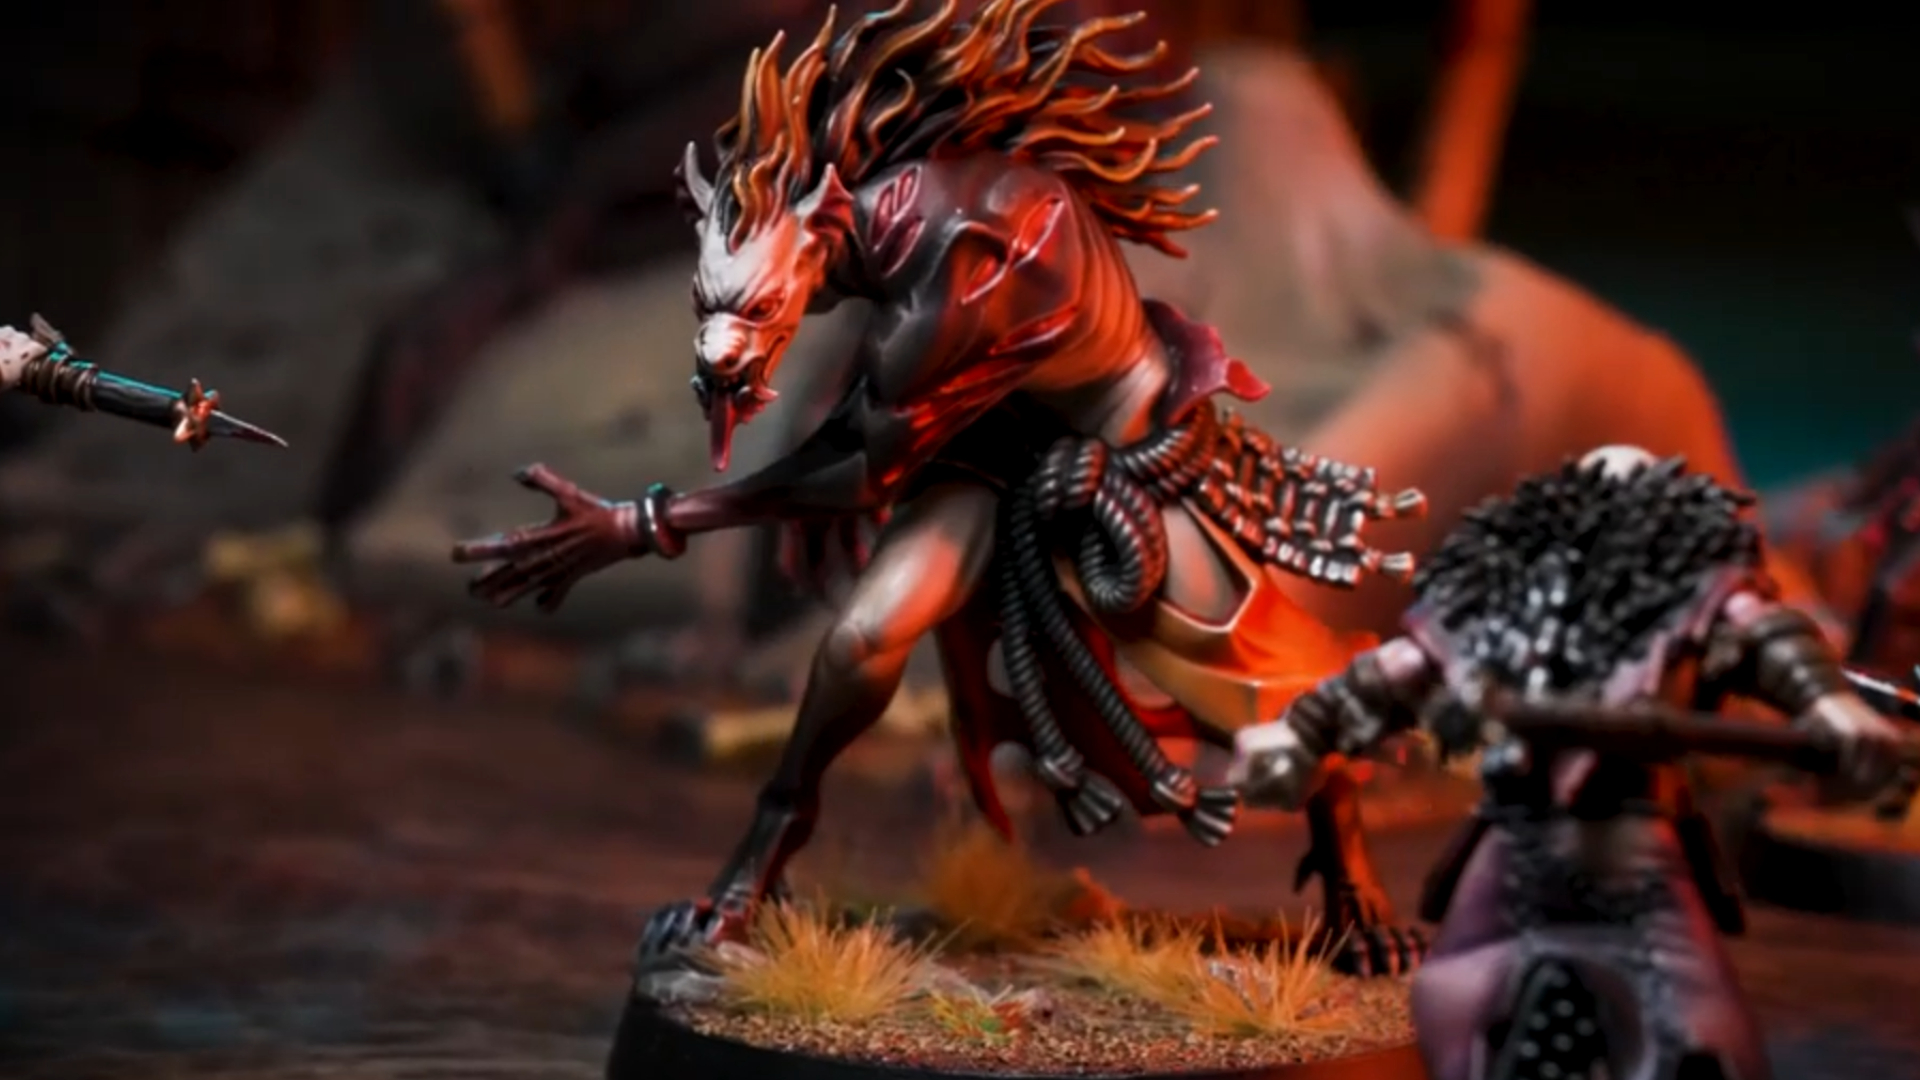 Warcry: Bloodhunt-Werbebild für Warhammer Age of Sigmar mit einem vampirischen Monster, das sich Chaos-Gegnern stellt